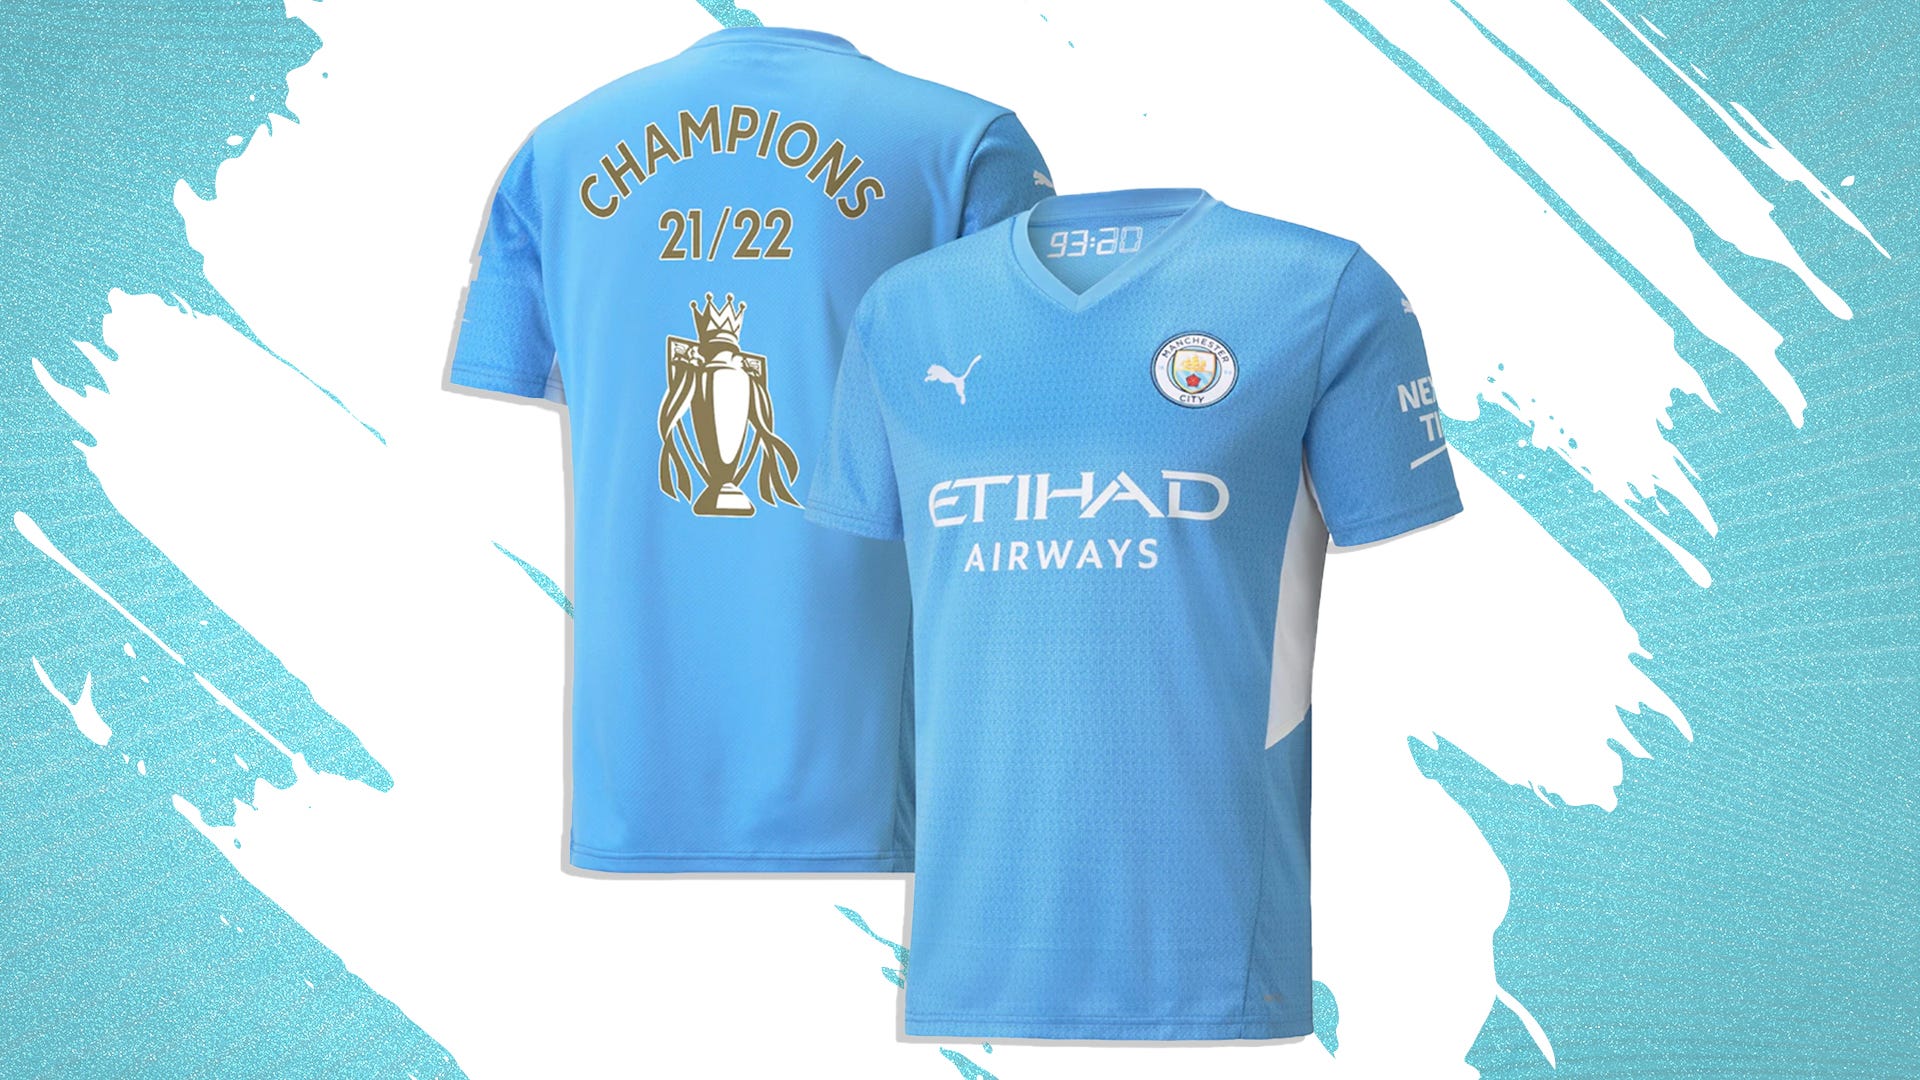 Manchester City 2021/22 Premier League Champions T-Shirt - Navy